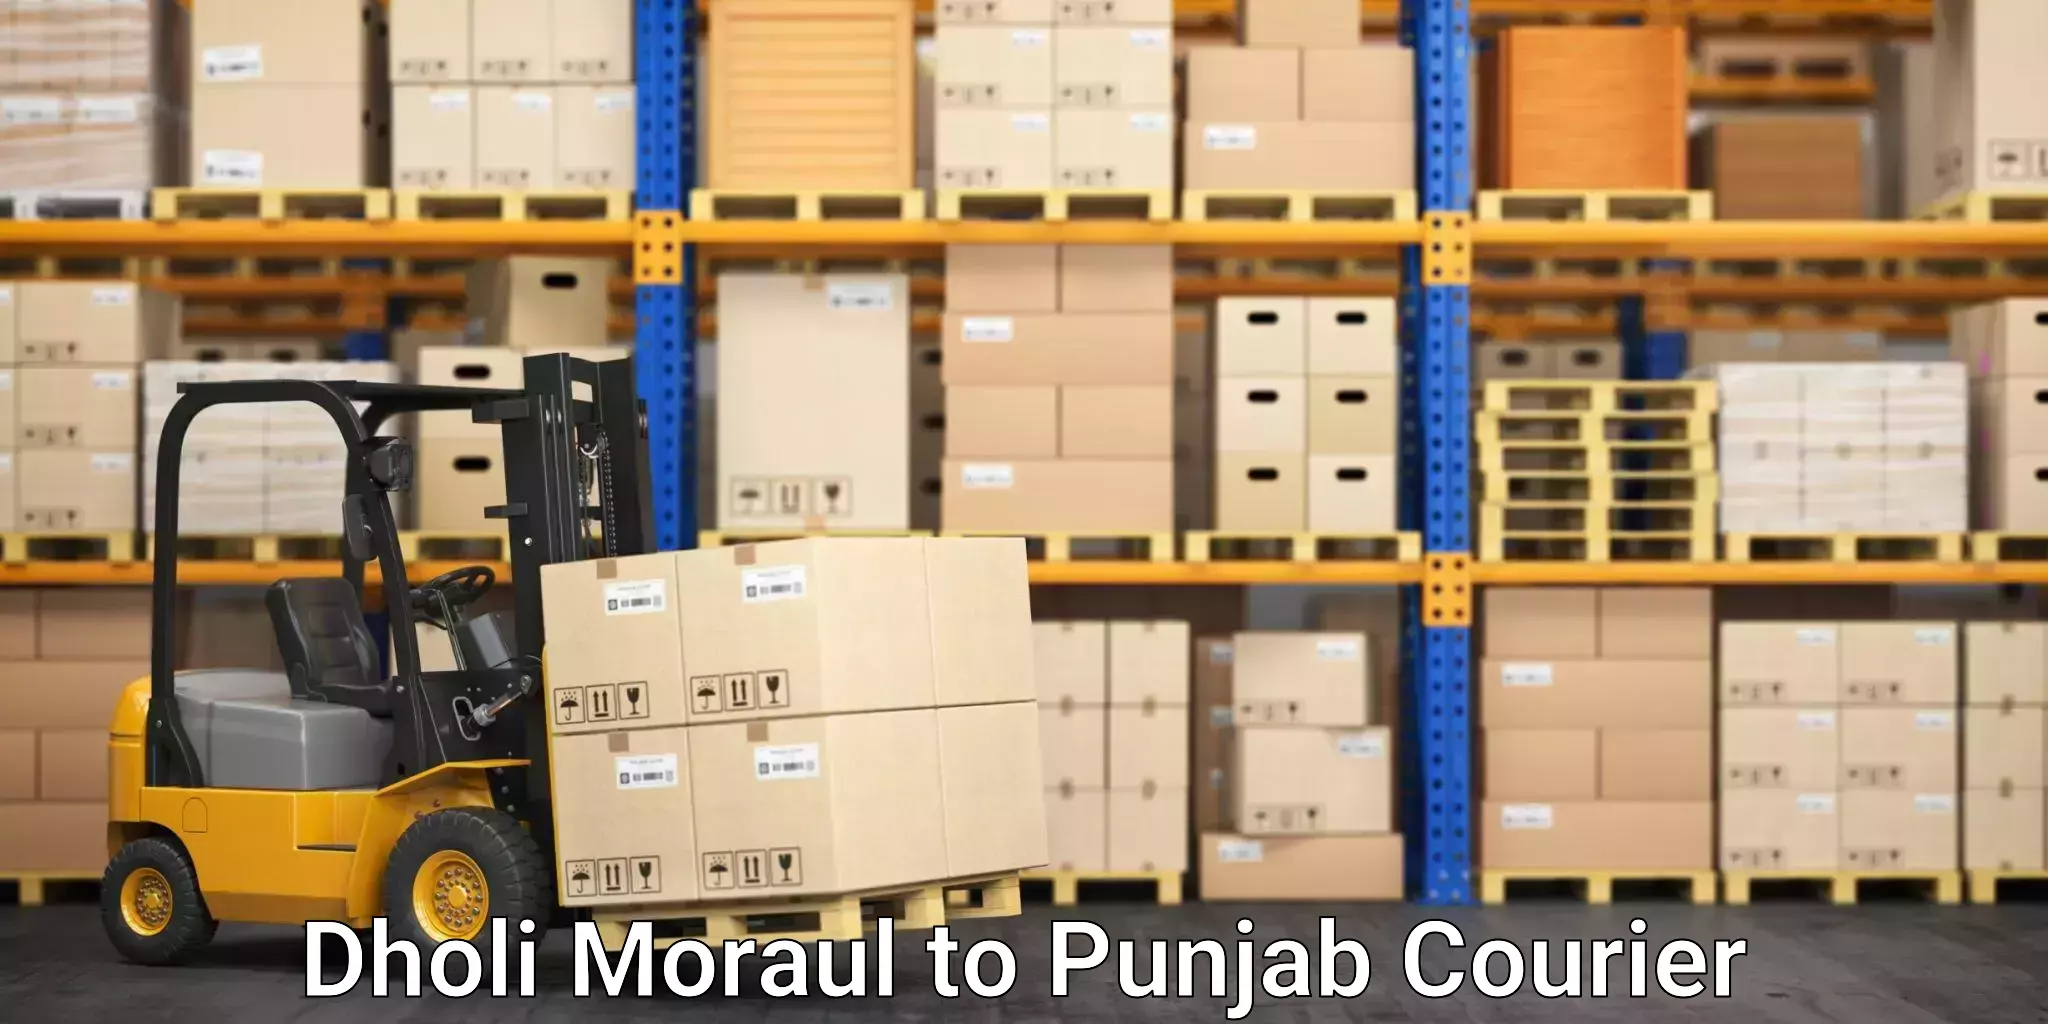 Furniture moving experts Dholi Moraul to Faridkot